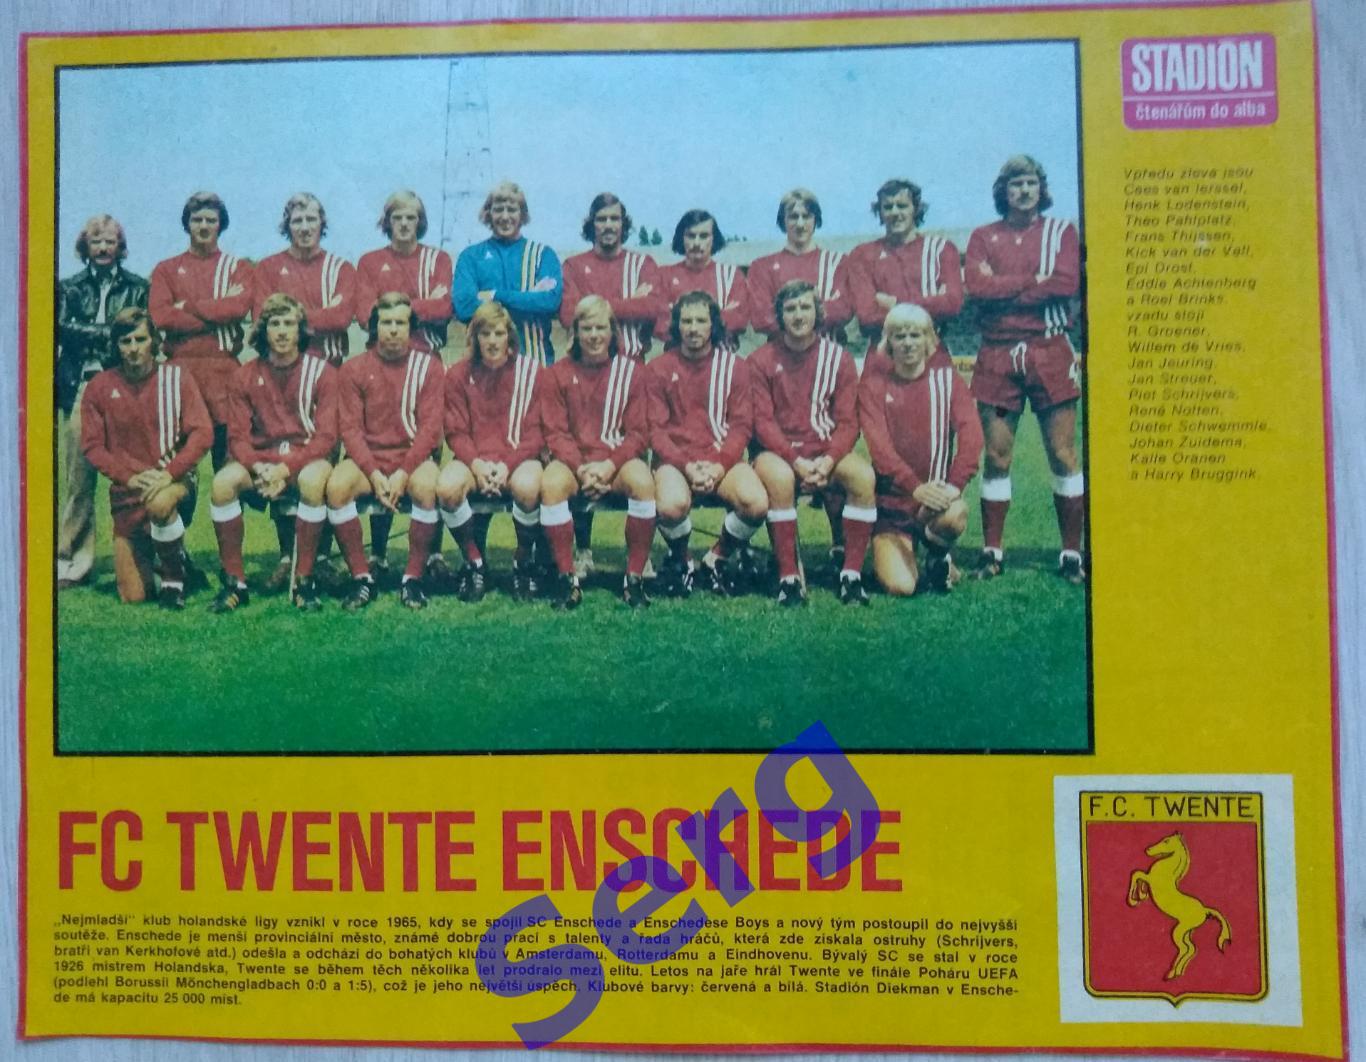 Постер Твенте Энсхеде, Голландия из журнала Стадион/Stadion